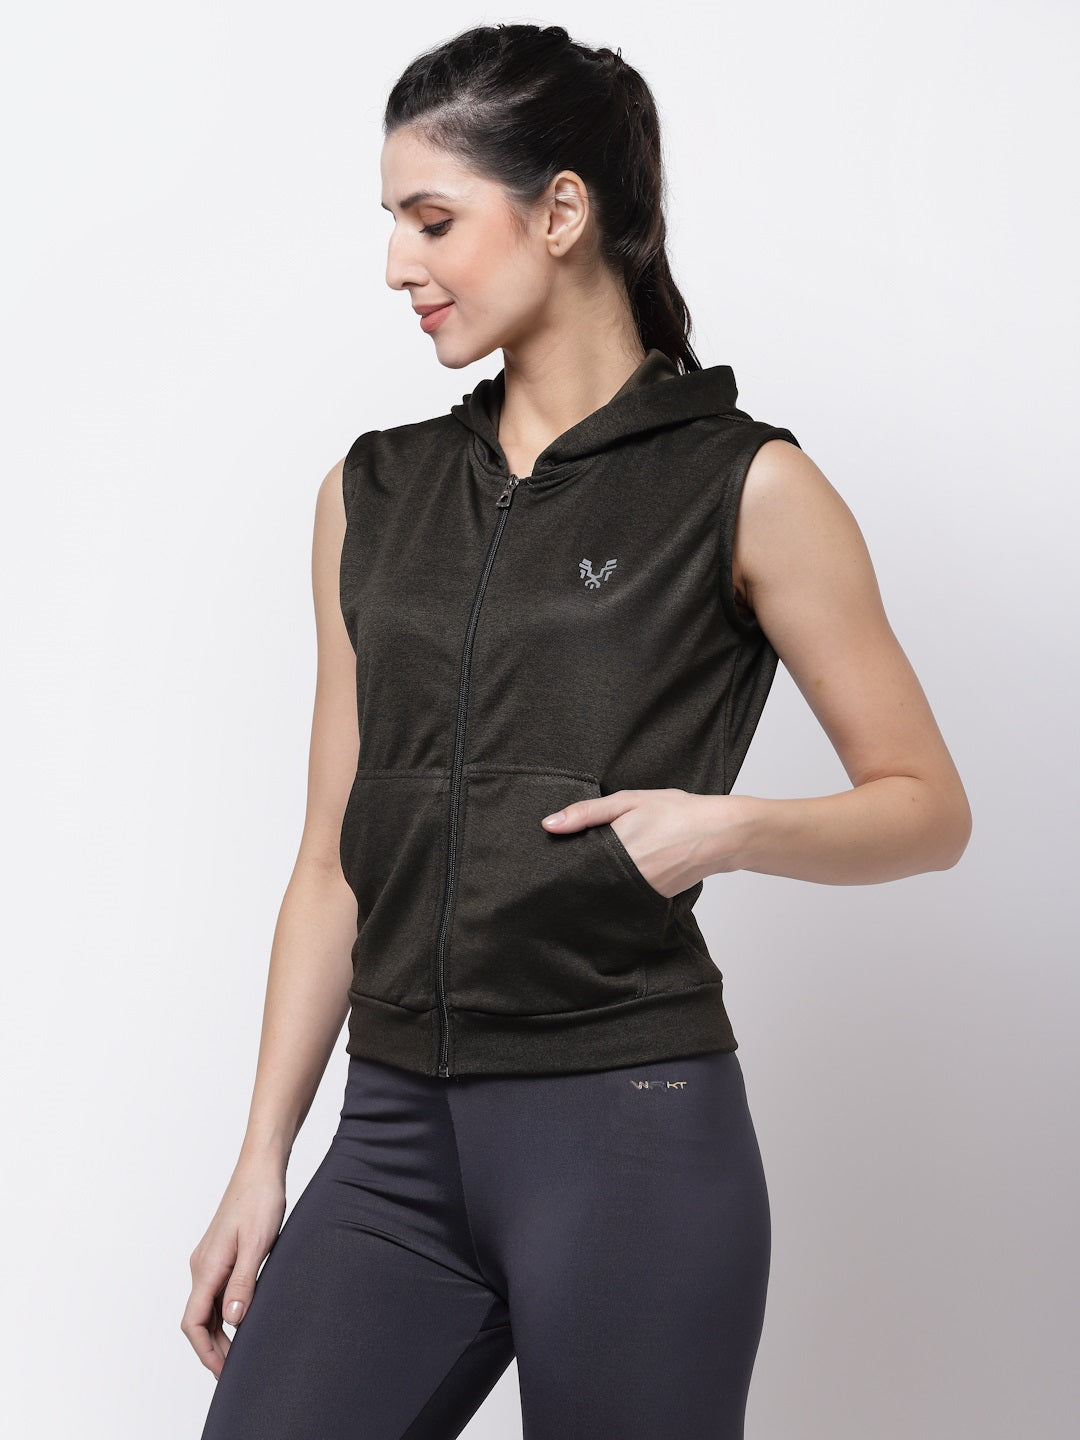 Uzarus Women's Sleeveless Hooded Training Sports Gym Jacket